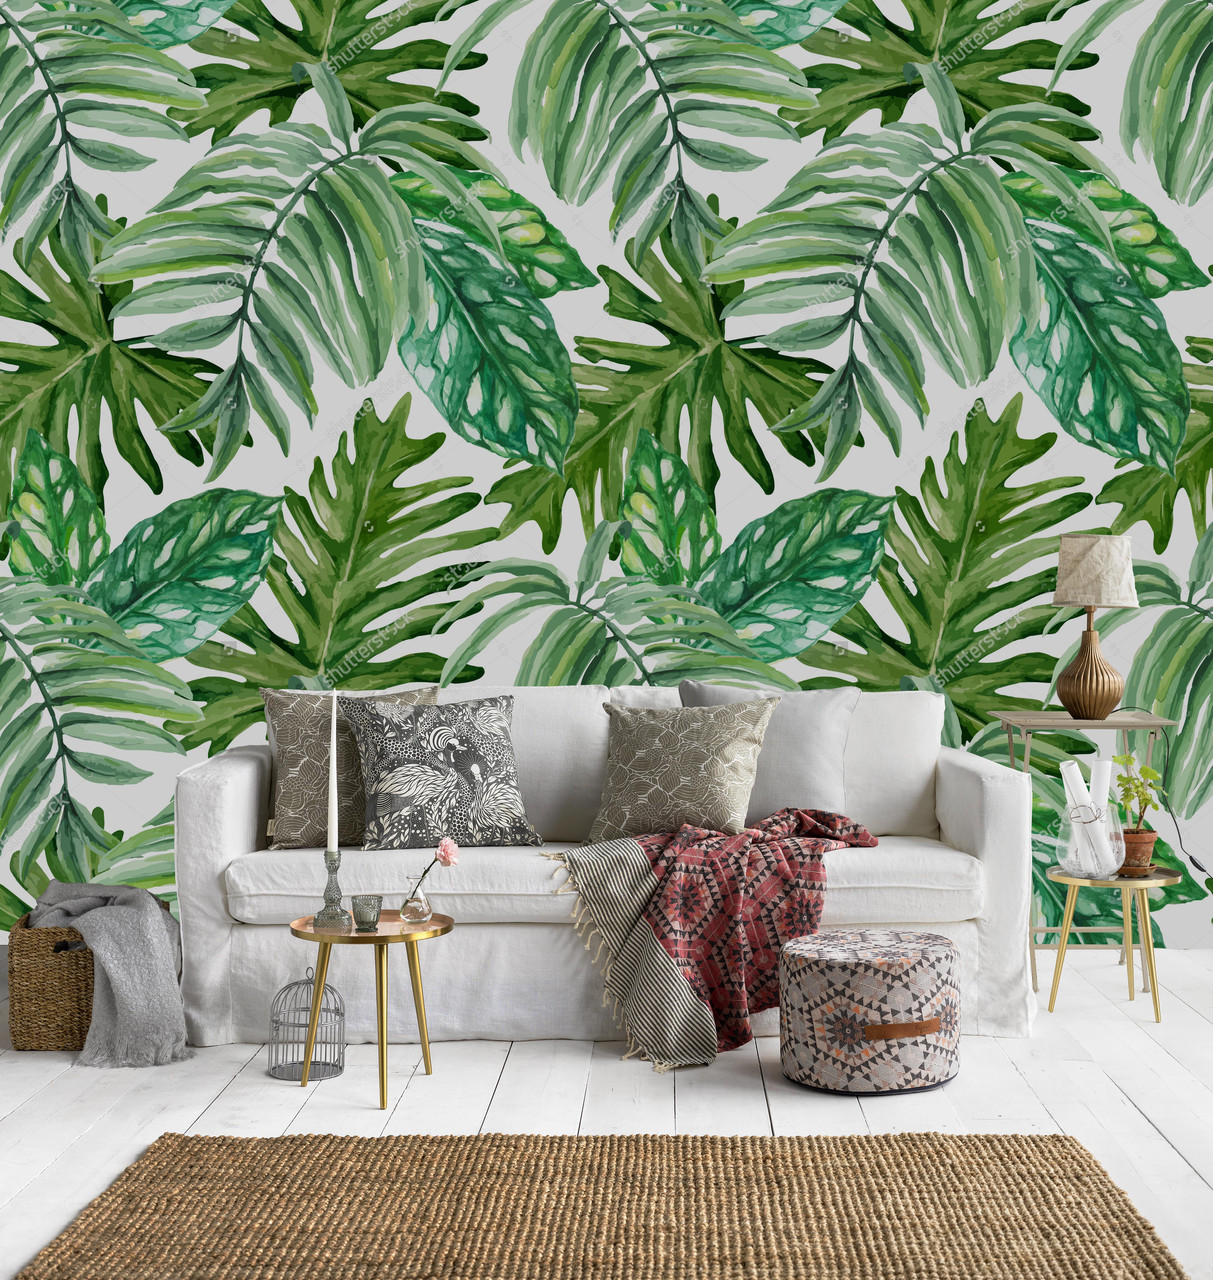 Обои с пальмовыми листьями для стен: Обои природа на стену, купить обои в Москве по лучшей цене